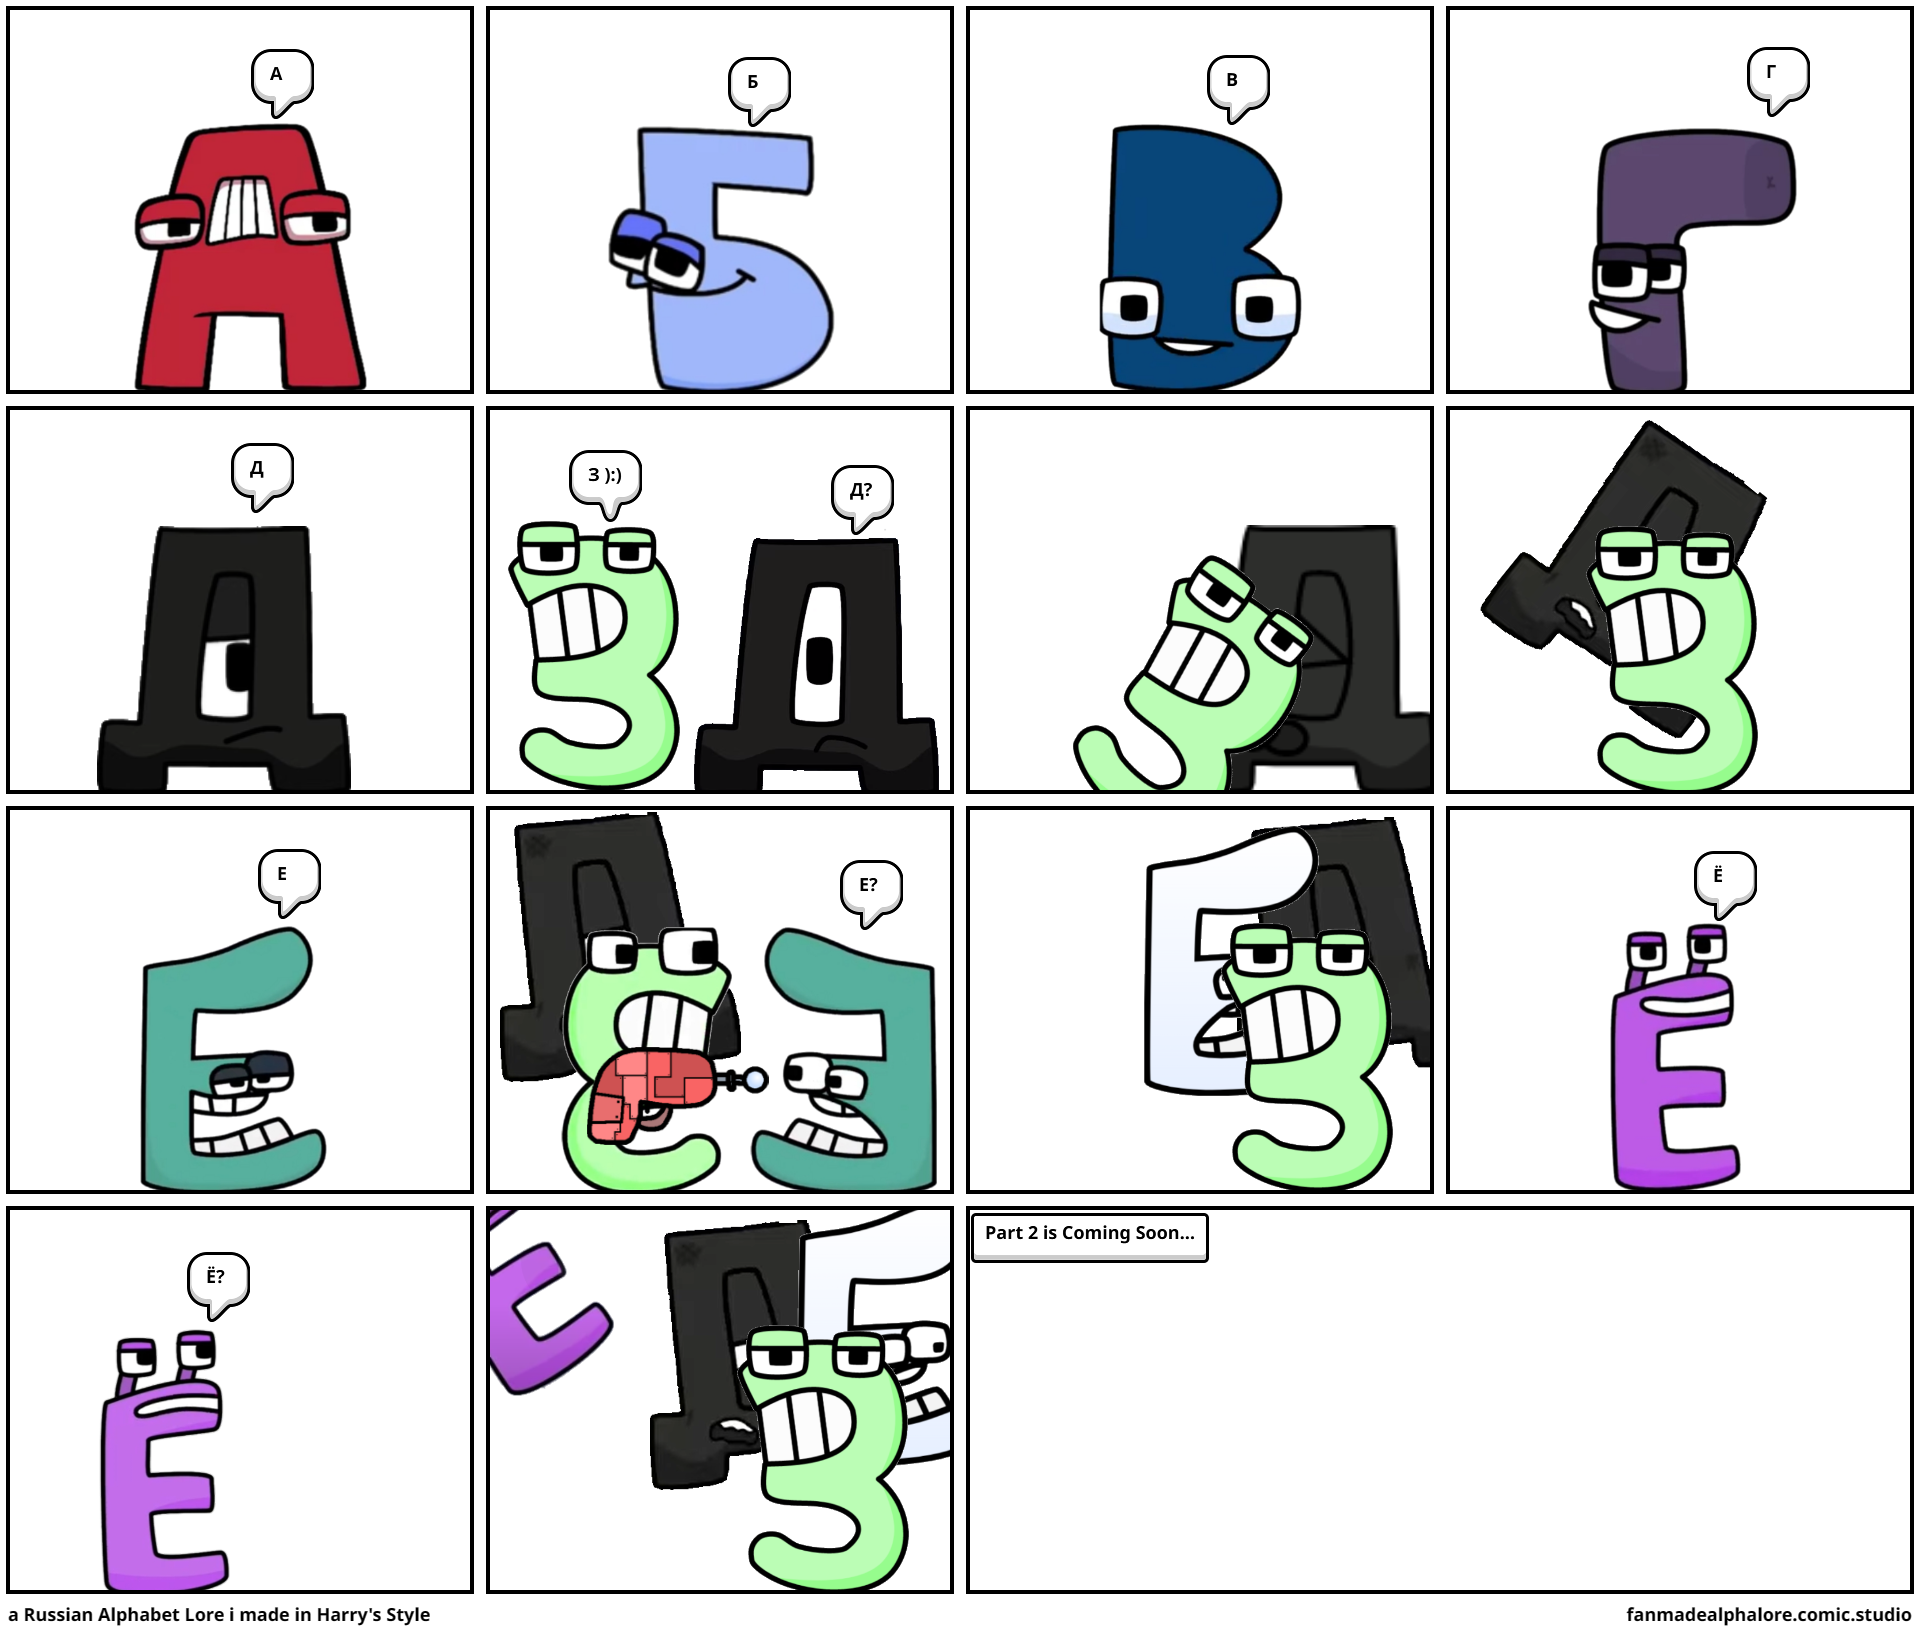 Russian alphabet lore by hktito - Comic Studio